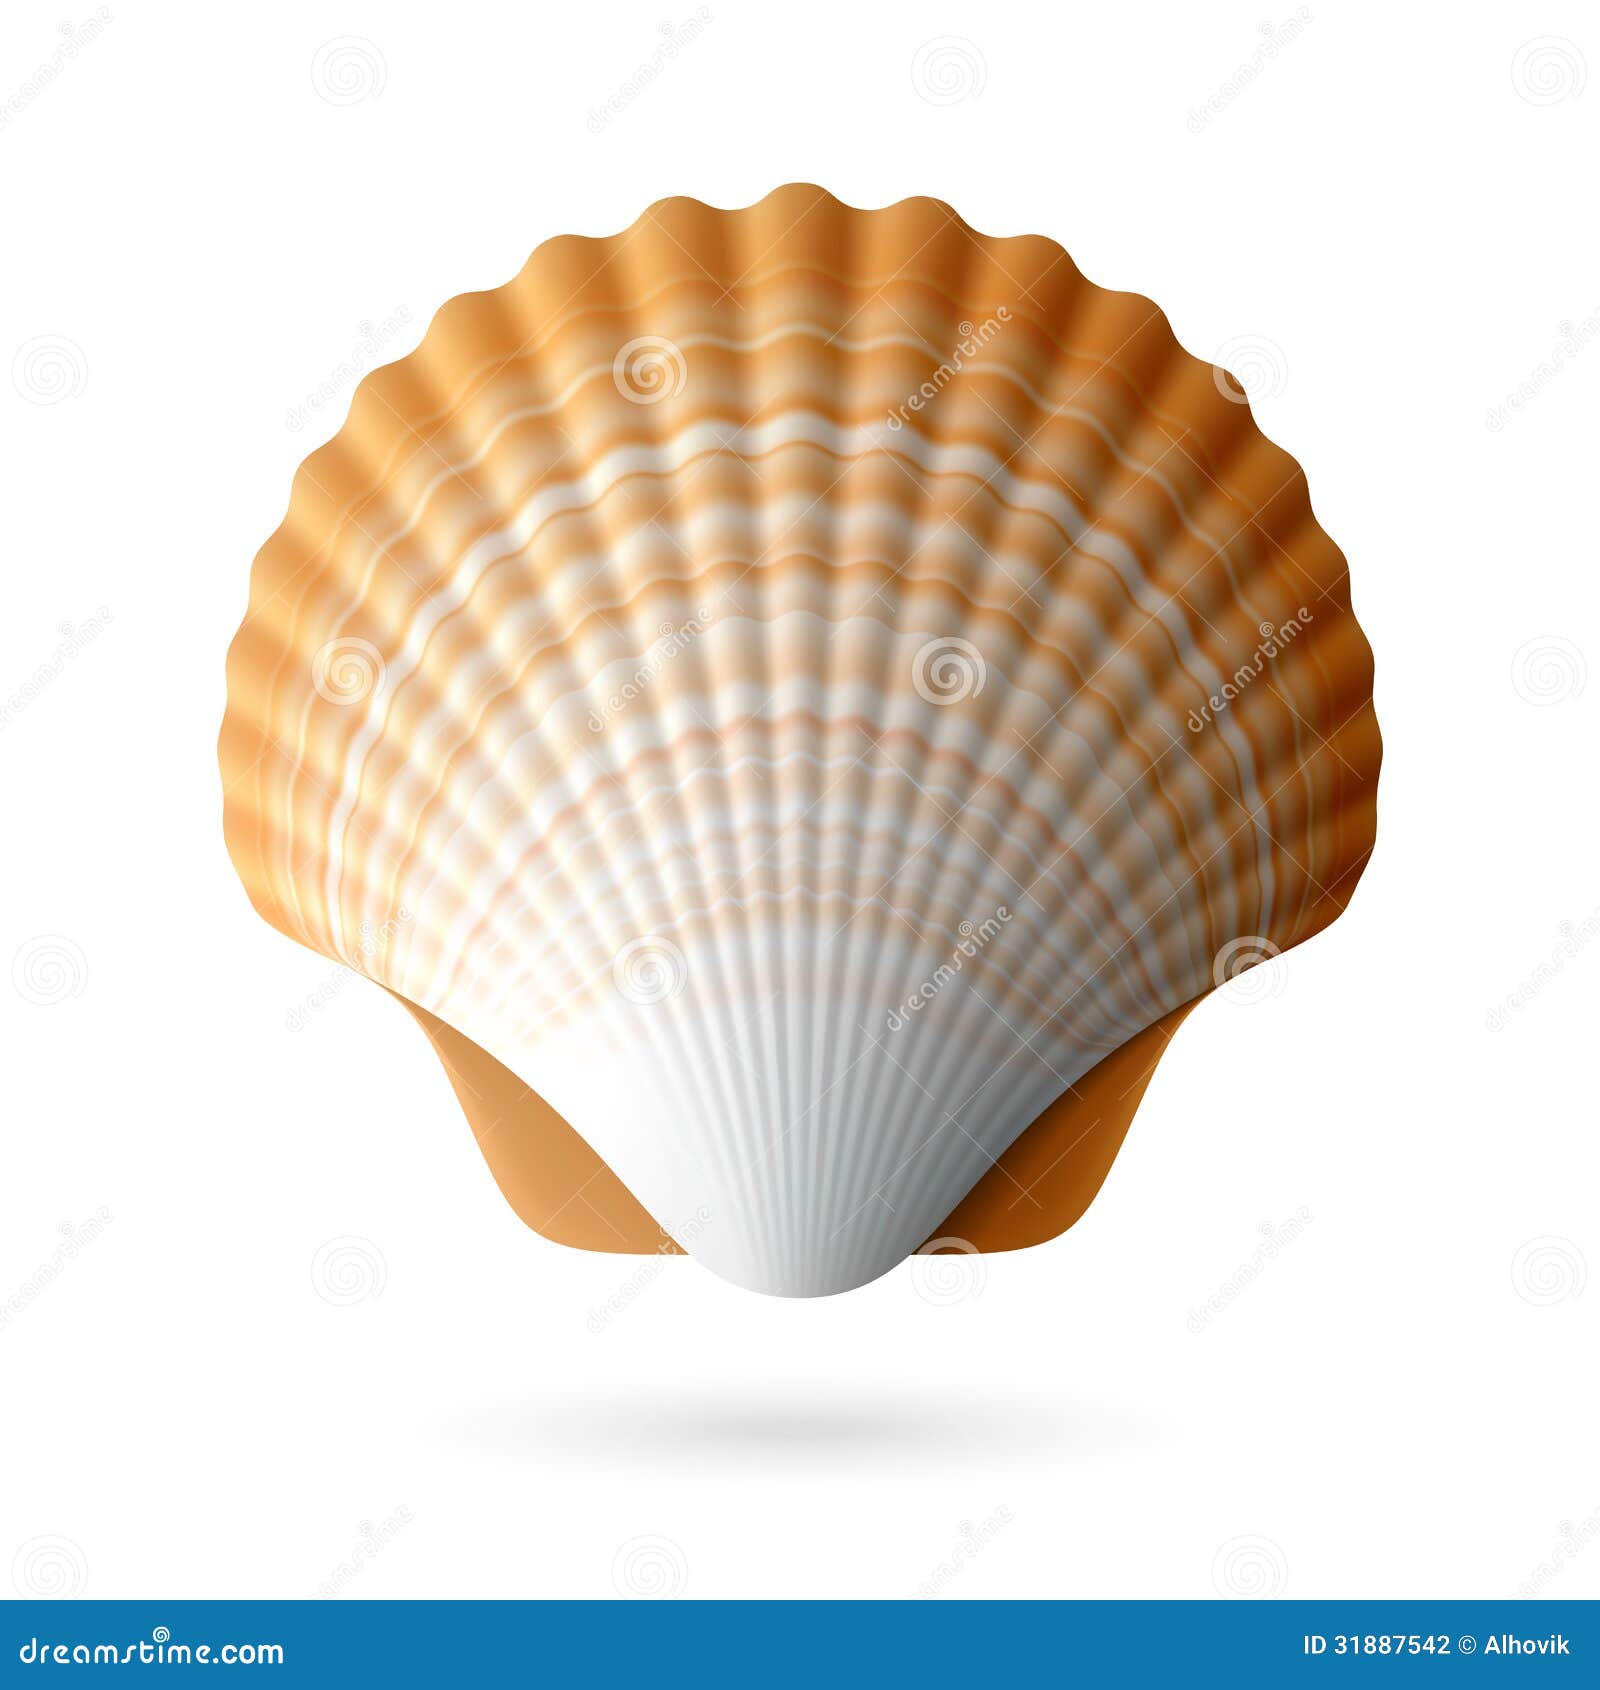 scallop seashell